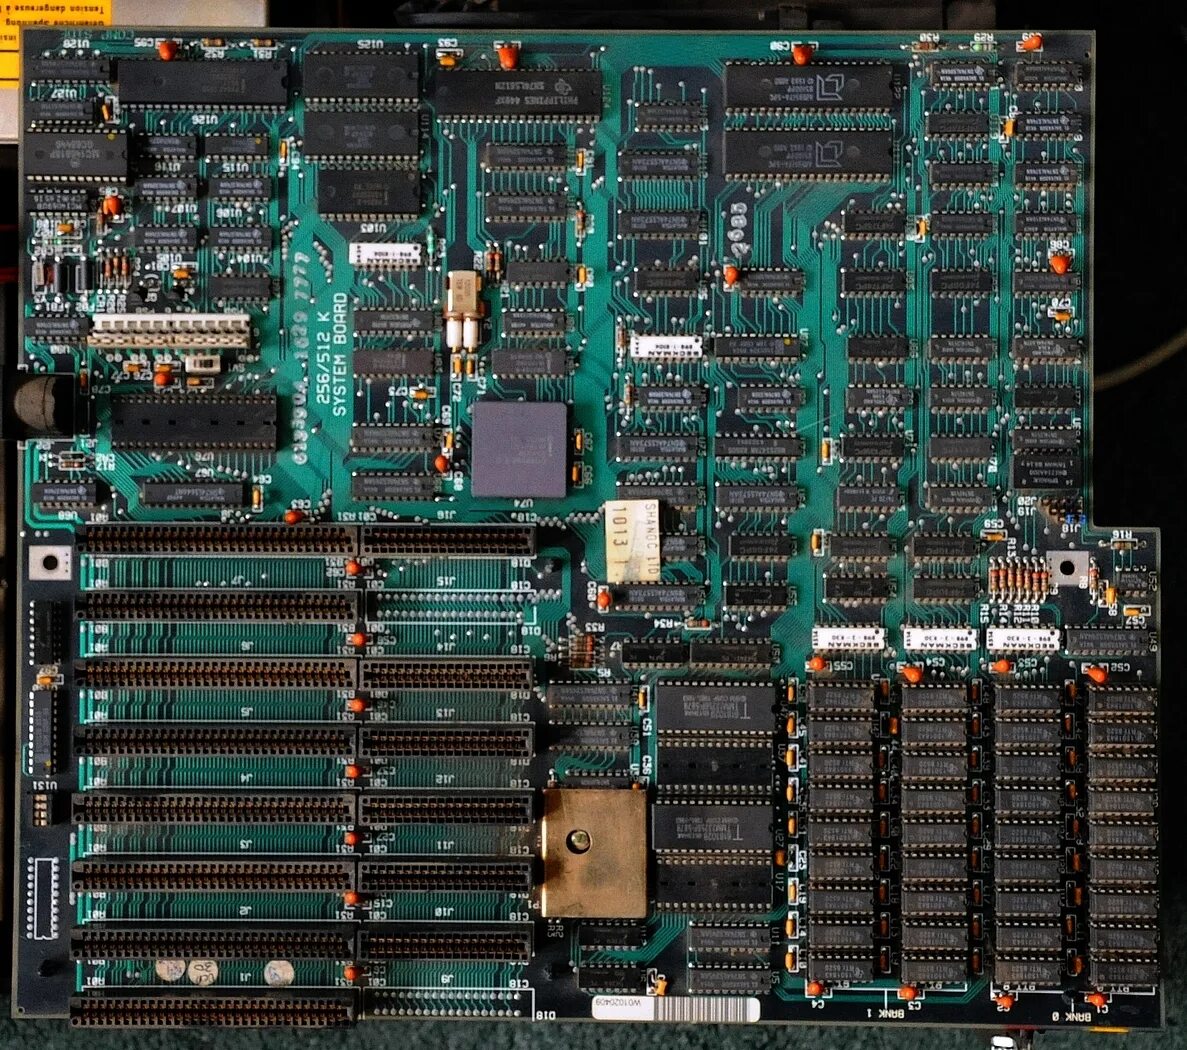 IBM PC at 286. IBM 5170. IBM PC 5170 at. IBM PC XT model 286. Ibm совместимые